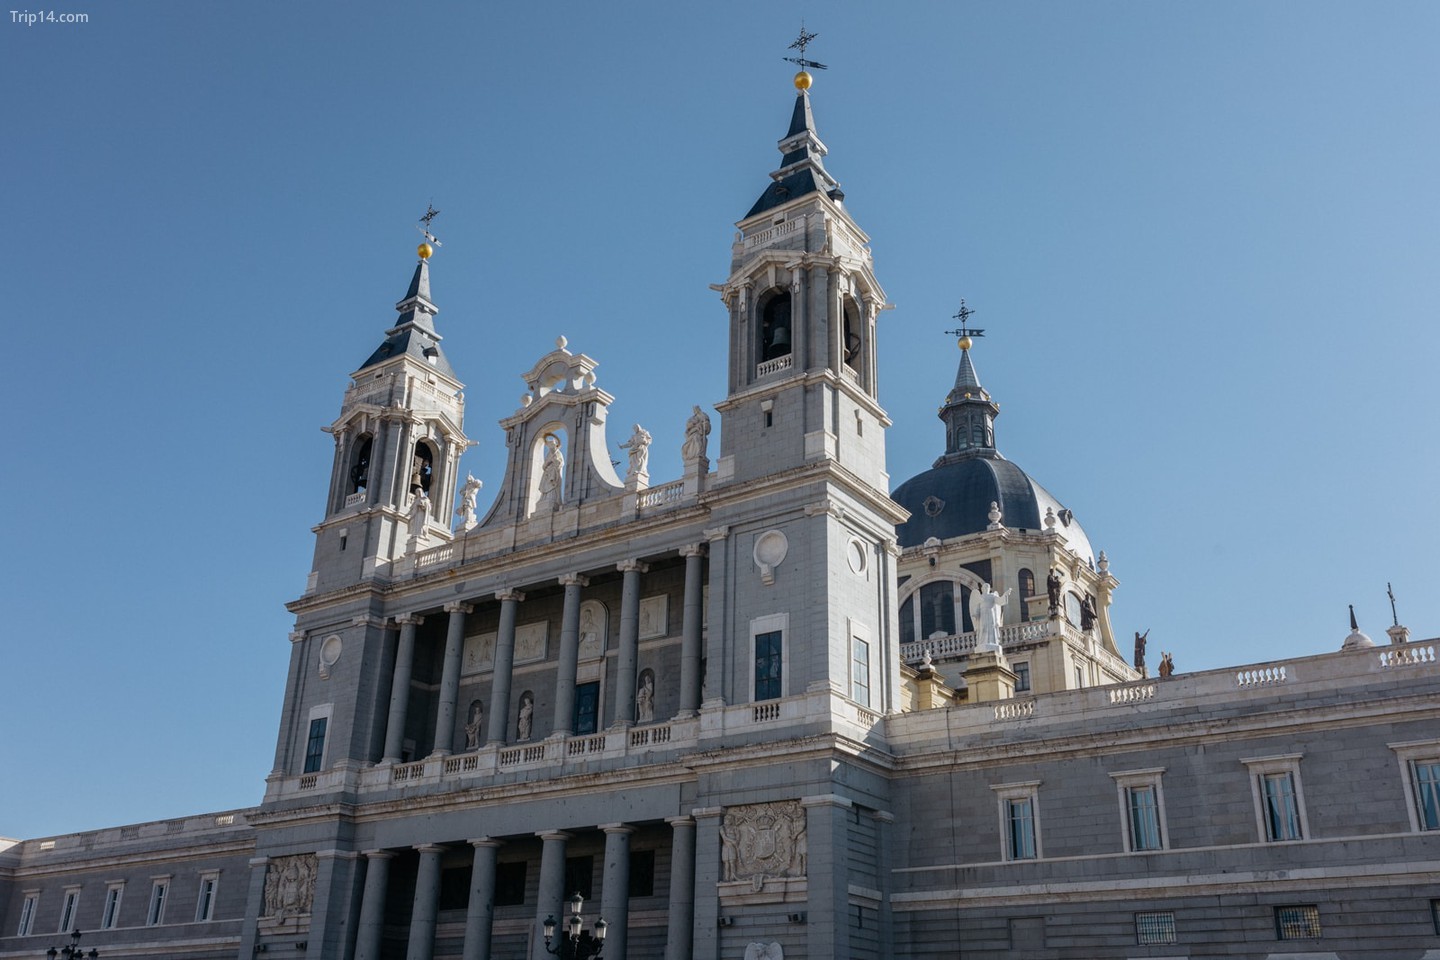  Catedral Almudena   |   Cristina Candel / 